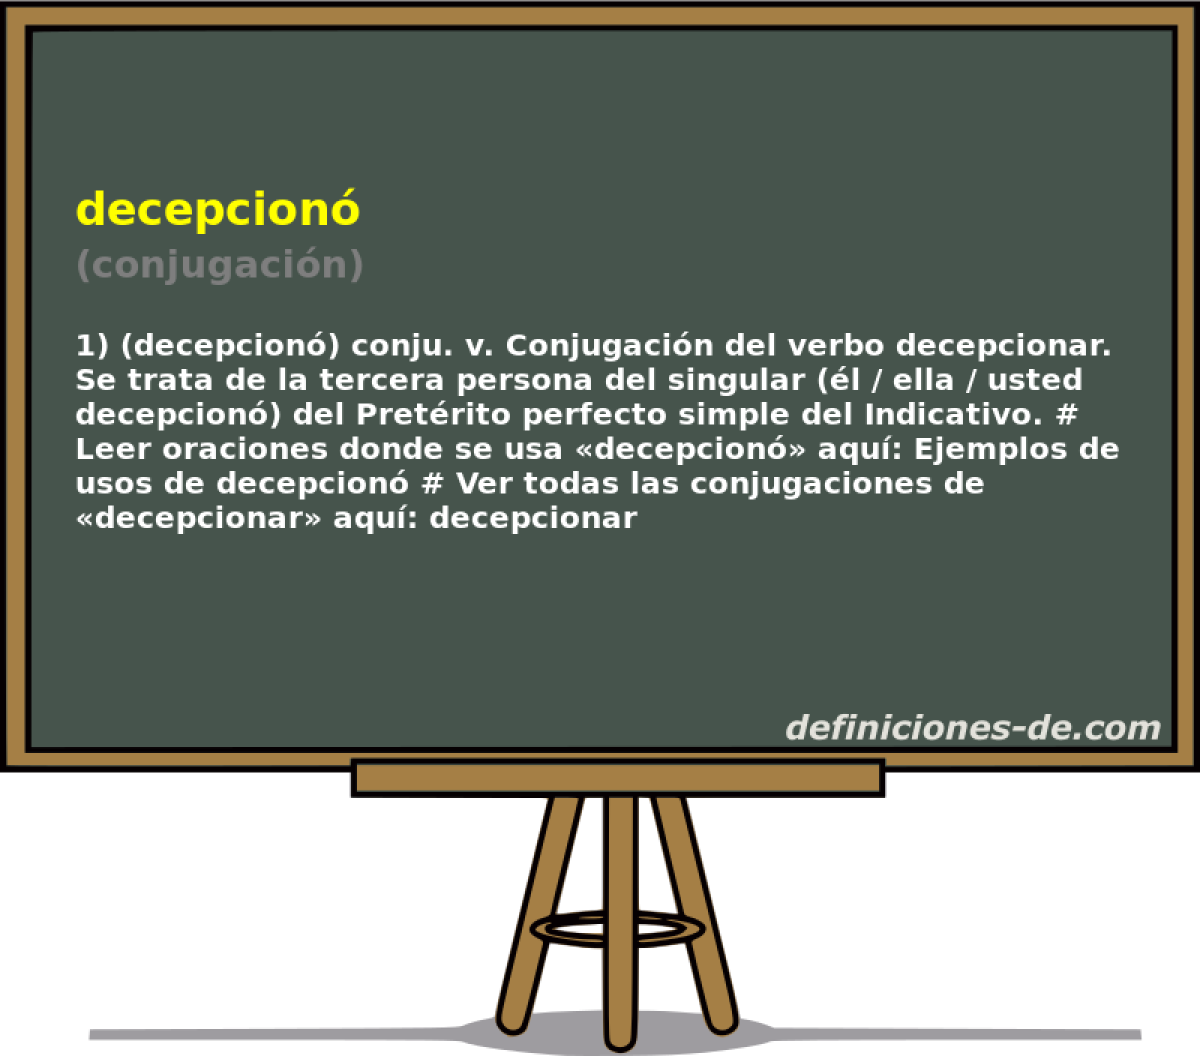 decepcion (conjugacin)